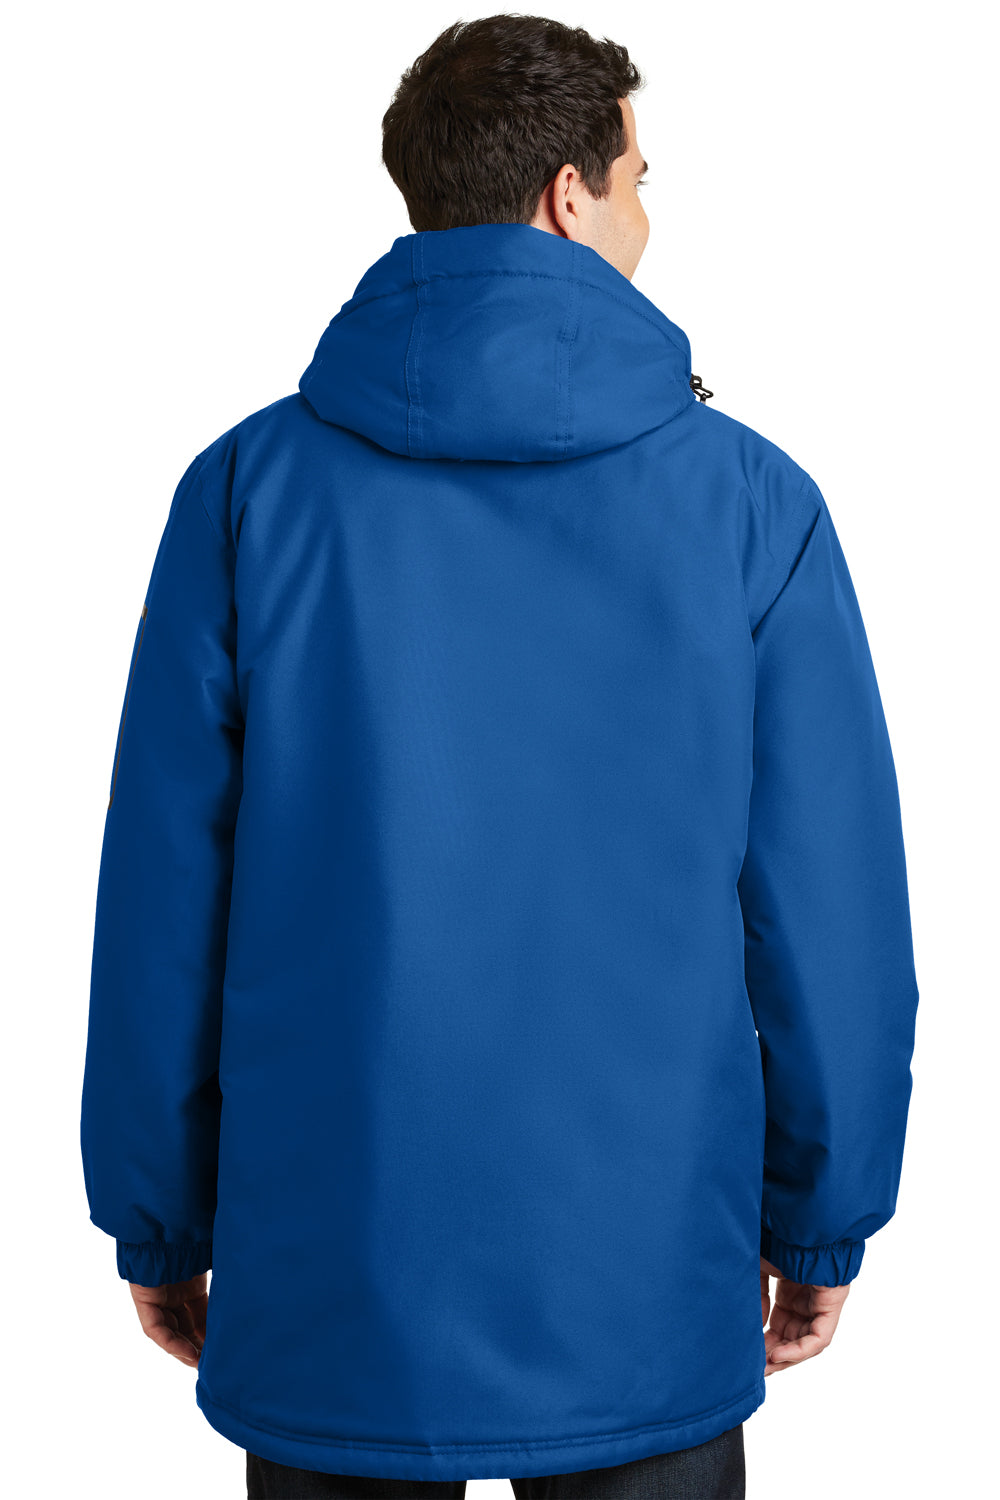 Port Authority J799 Mens Waterproof Full Zip Hooded Jacket Royal Blue Back